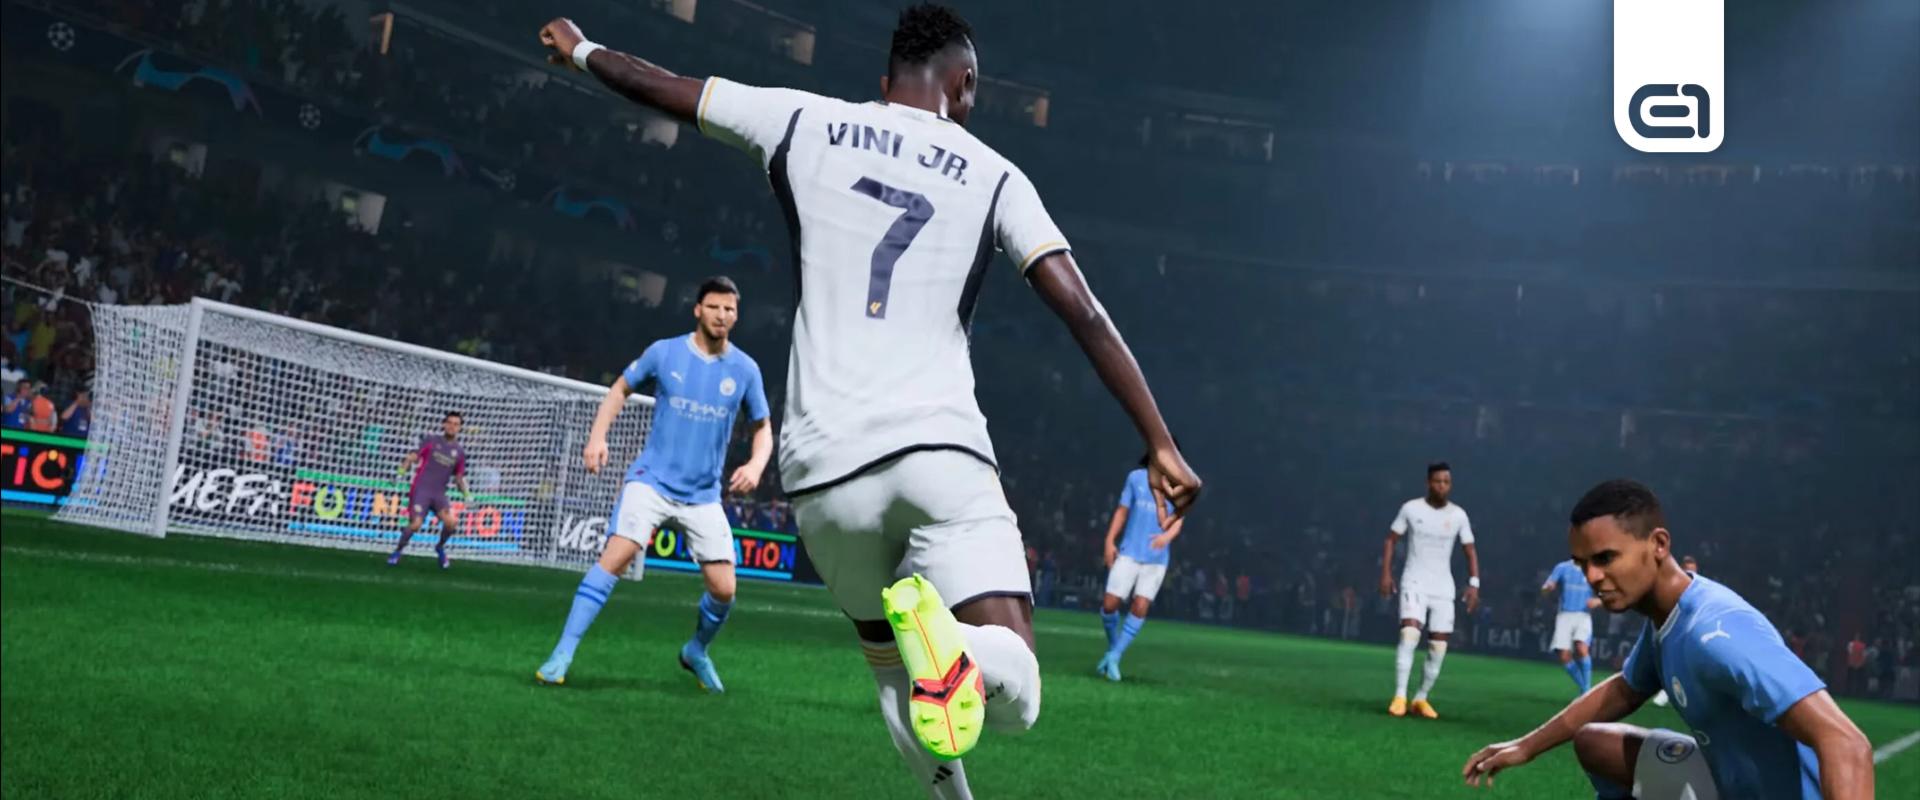 EA Sports FC: Több játékossal játszhatsz együtt, mint valaha